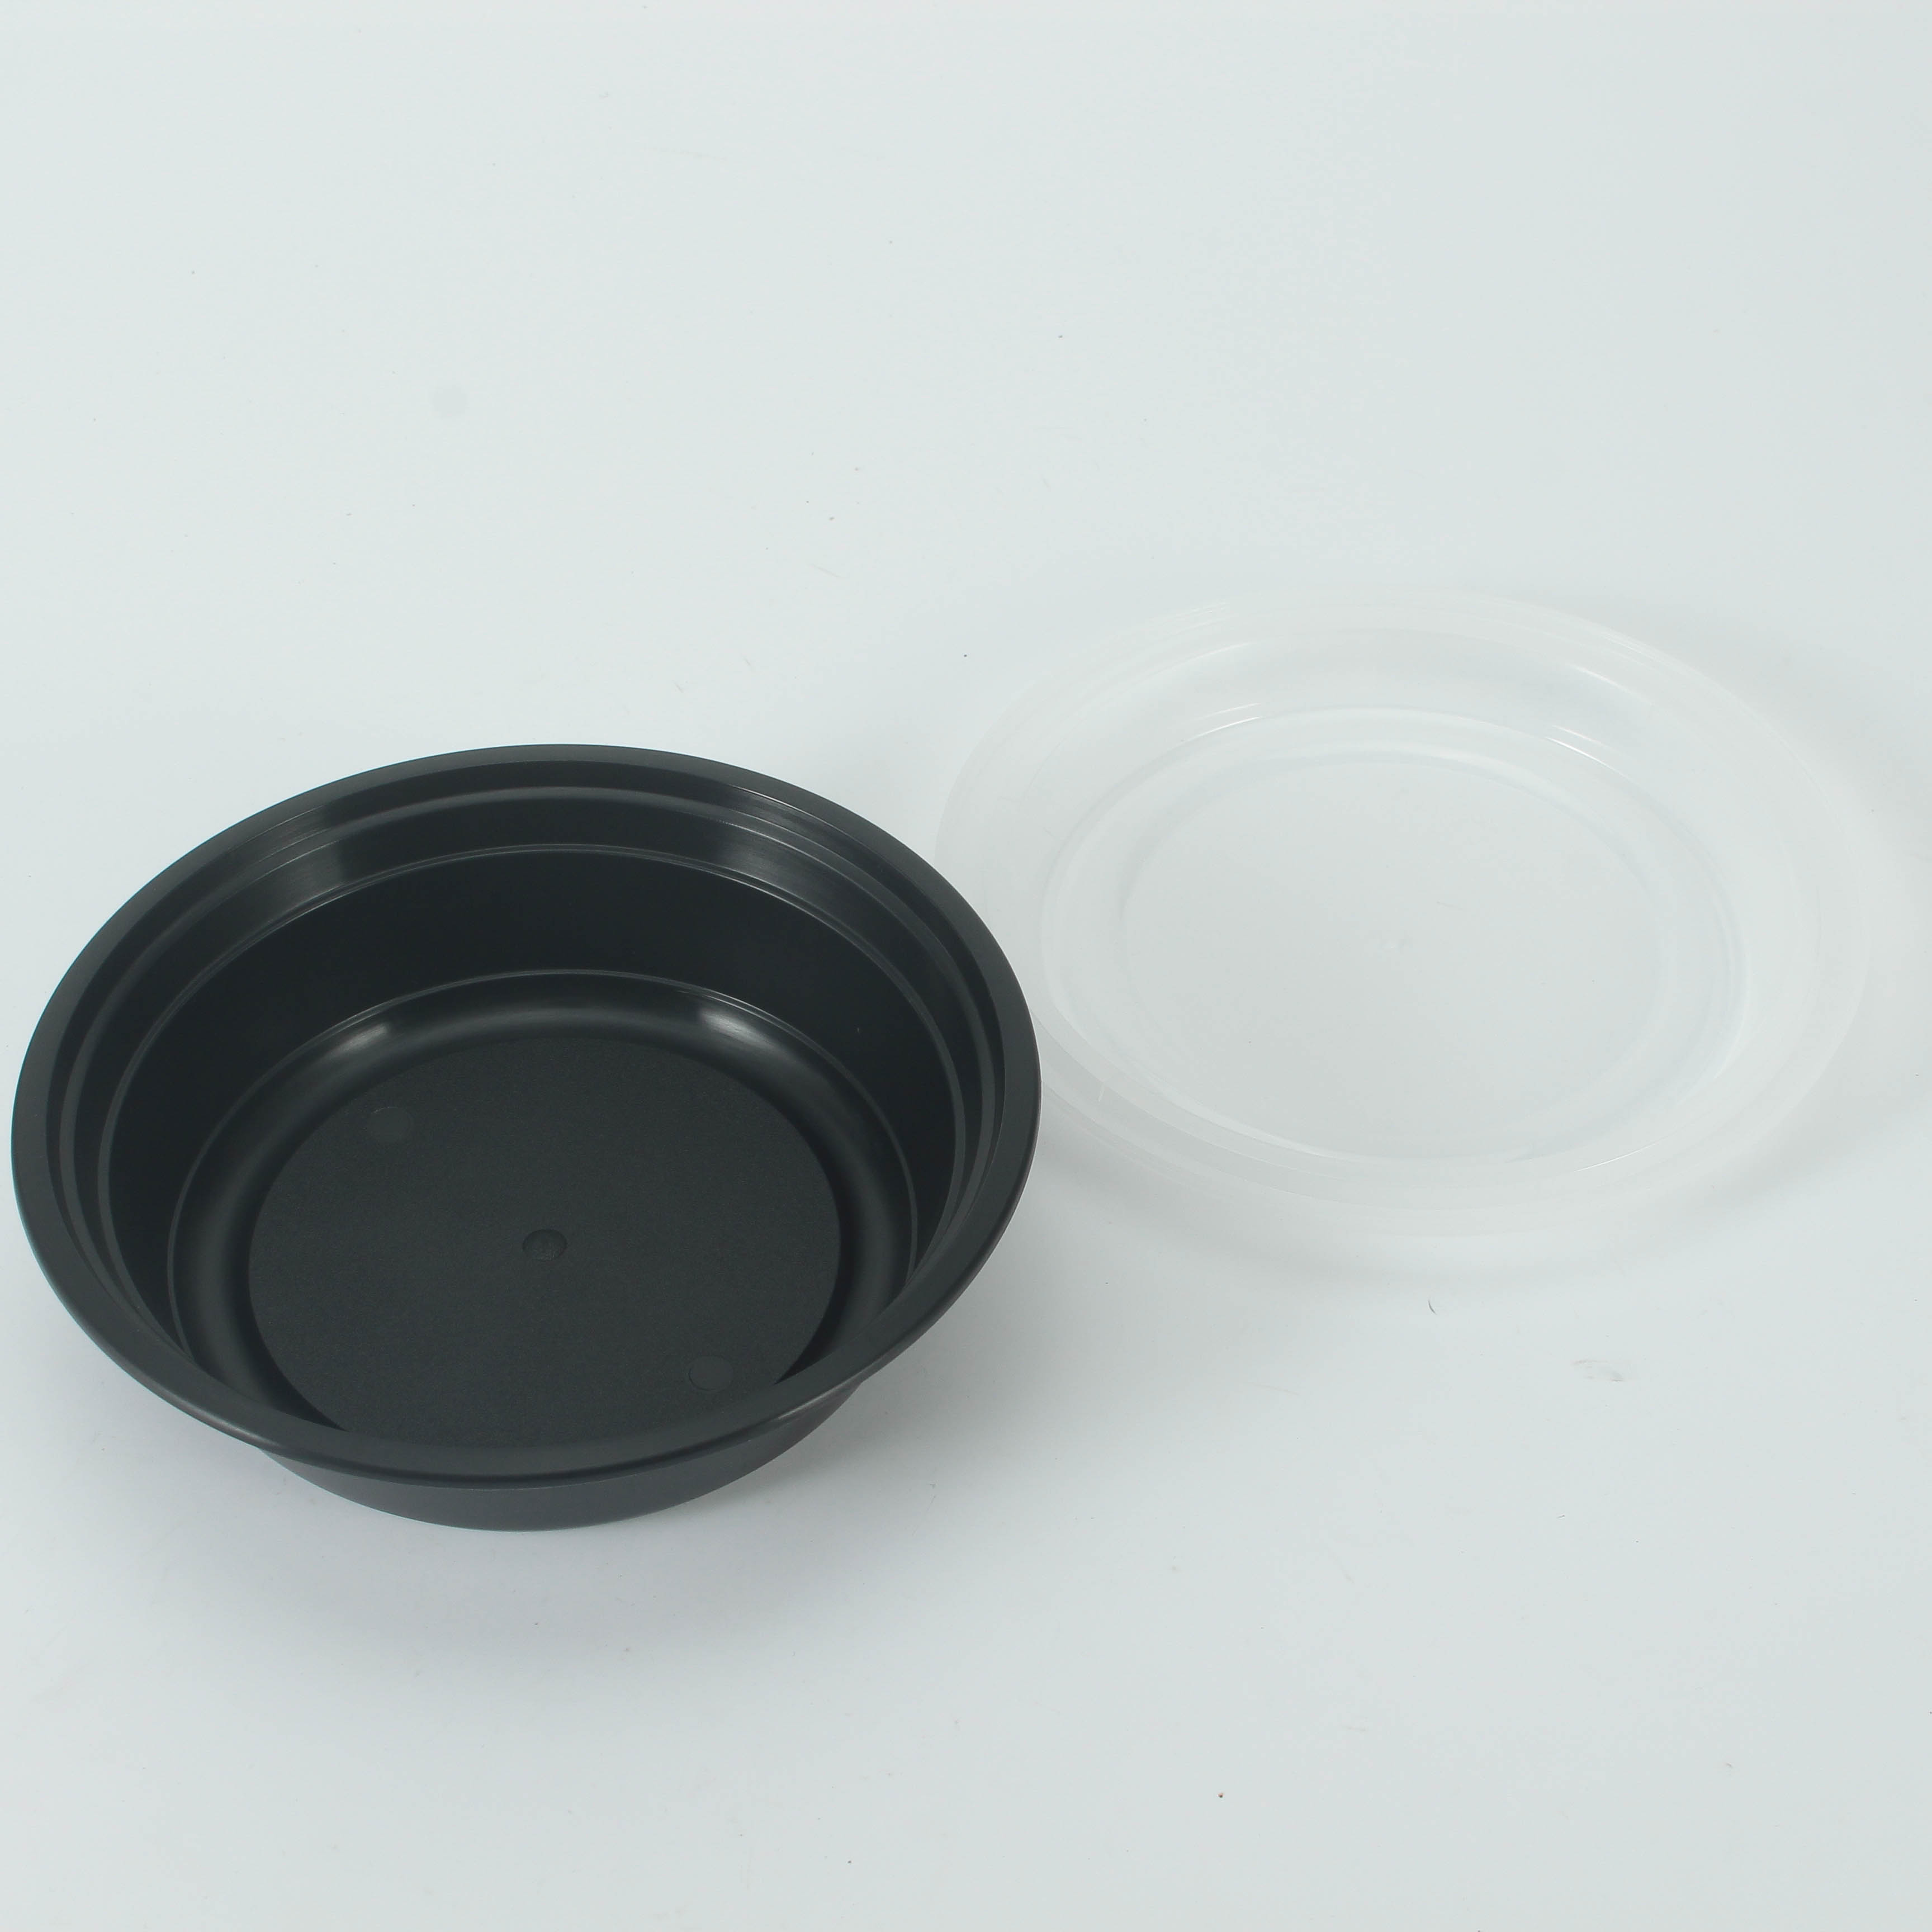 28 oz Black Plastic Bowls